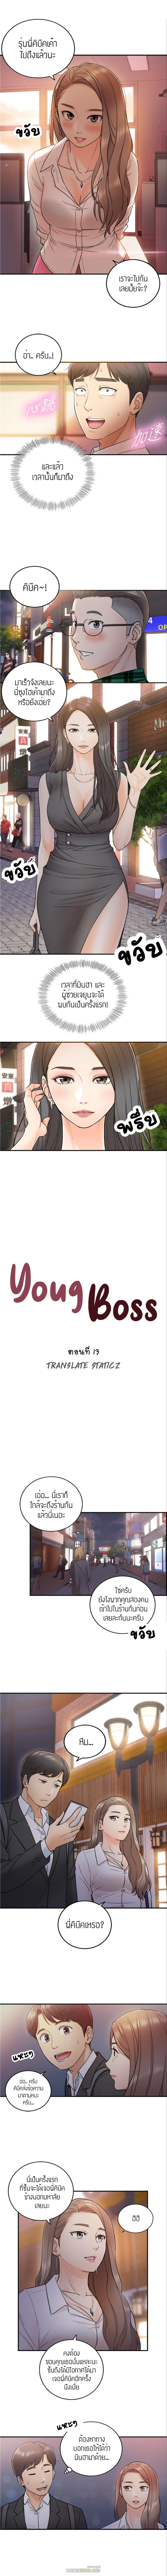 Young Boss ตอนที่ 13 แปลไทย รูปที่ 2